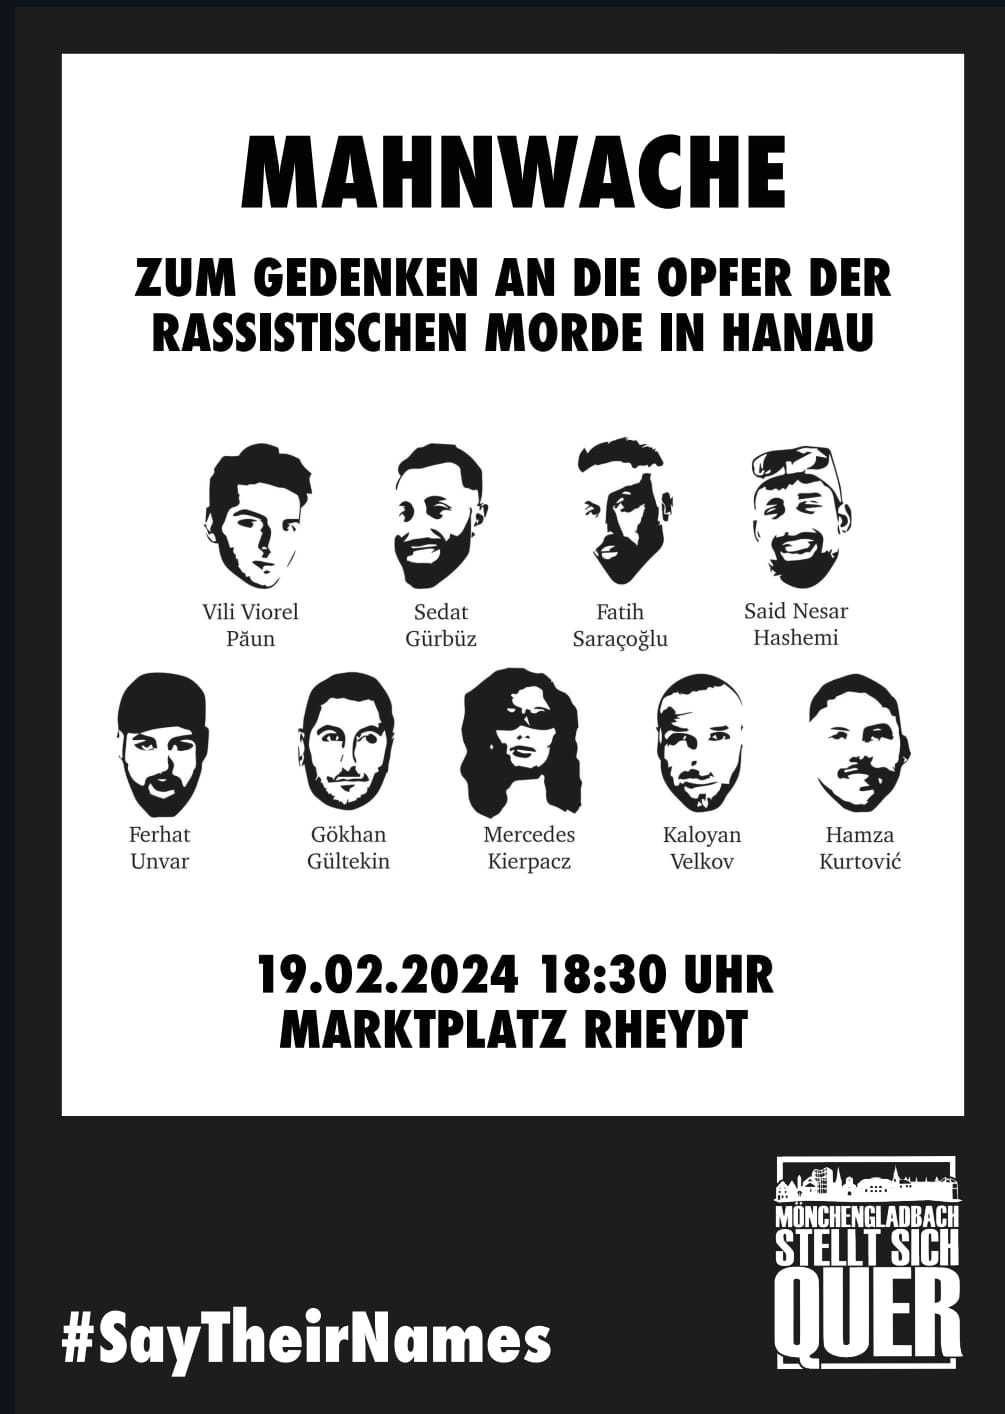 Mahnwache zum Gedenken an die Opfer der rassistischen Morde in Hanau